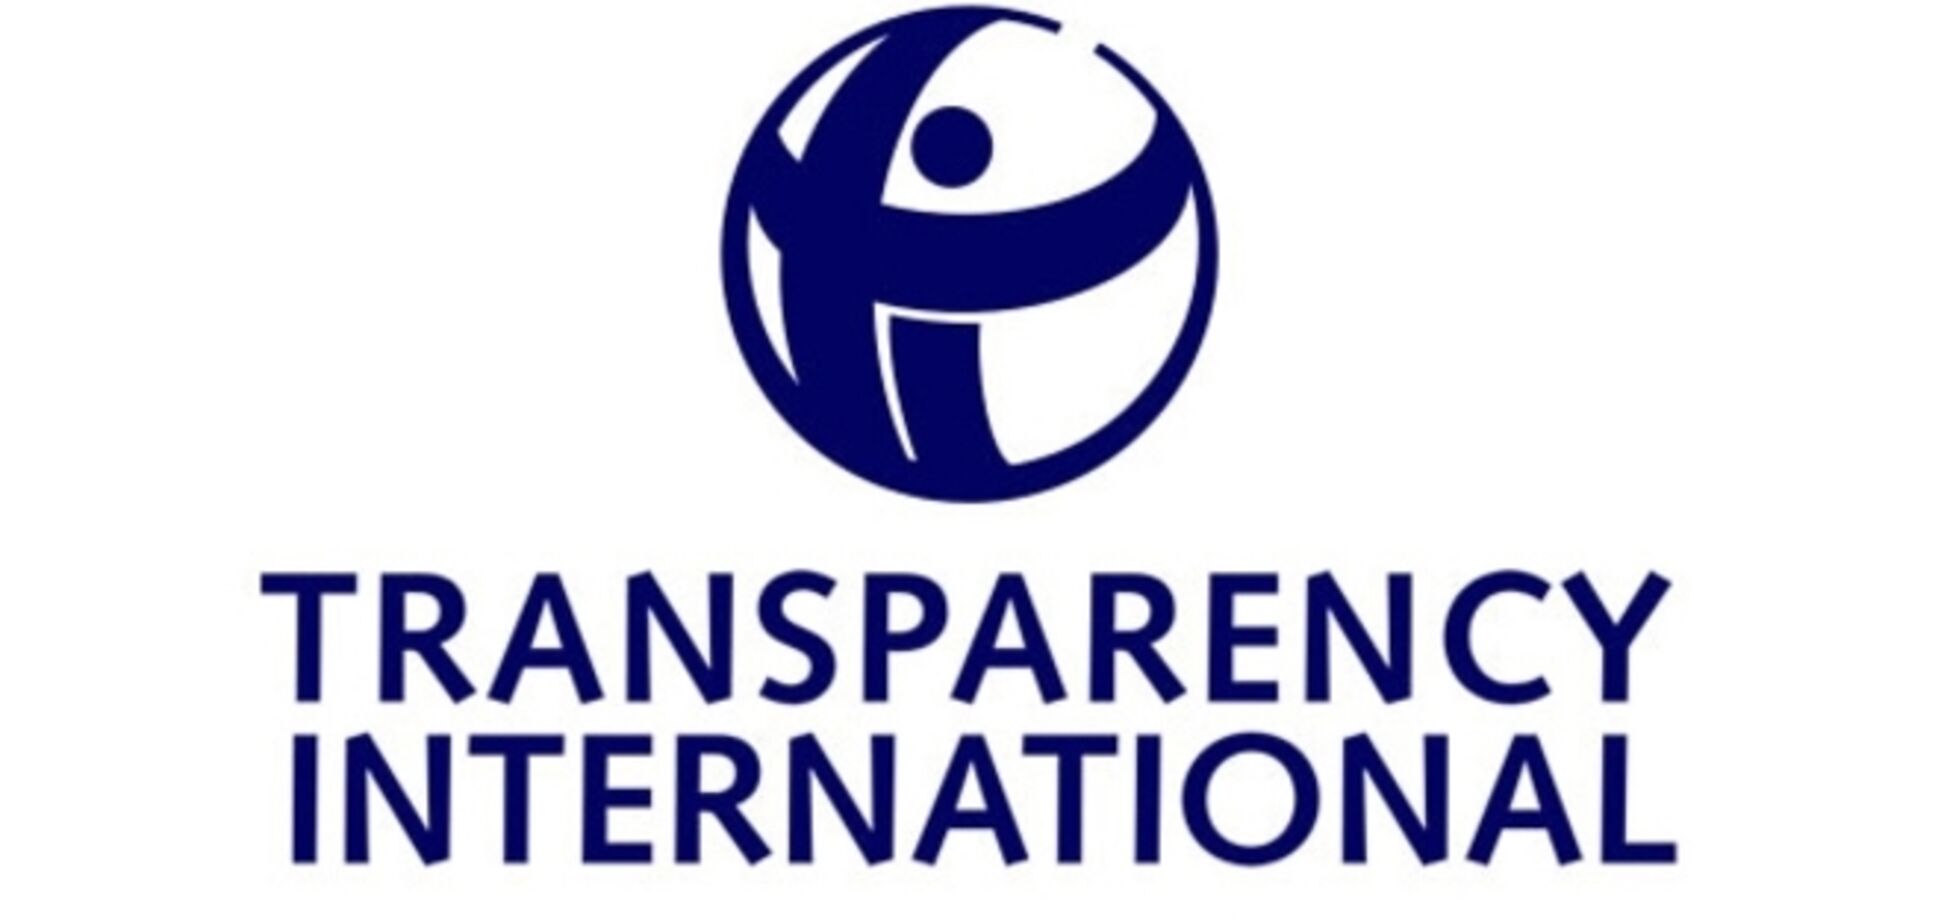 Transparency International: у пяти кандидатов на должность главы антикоррупционного бюро 'сомнительное прошлое'